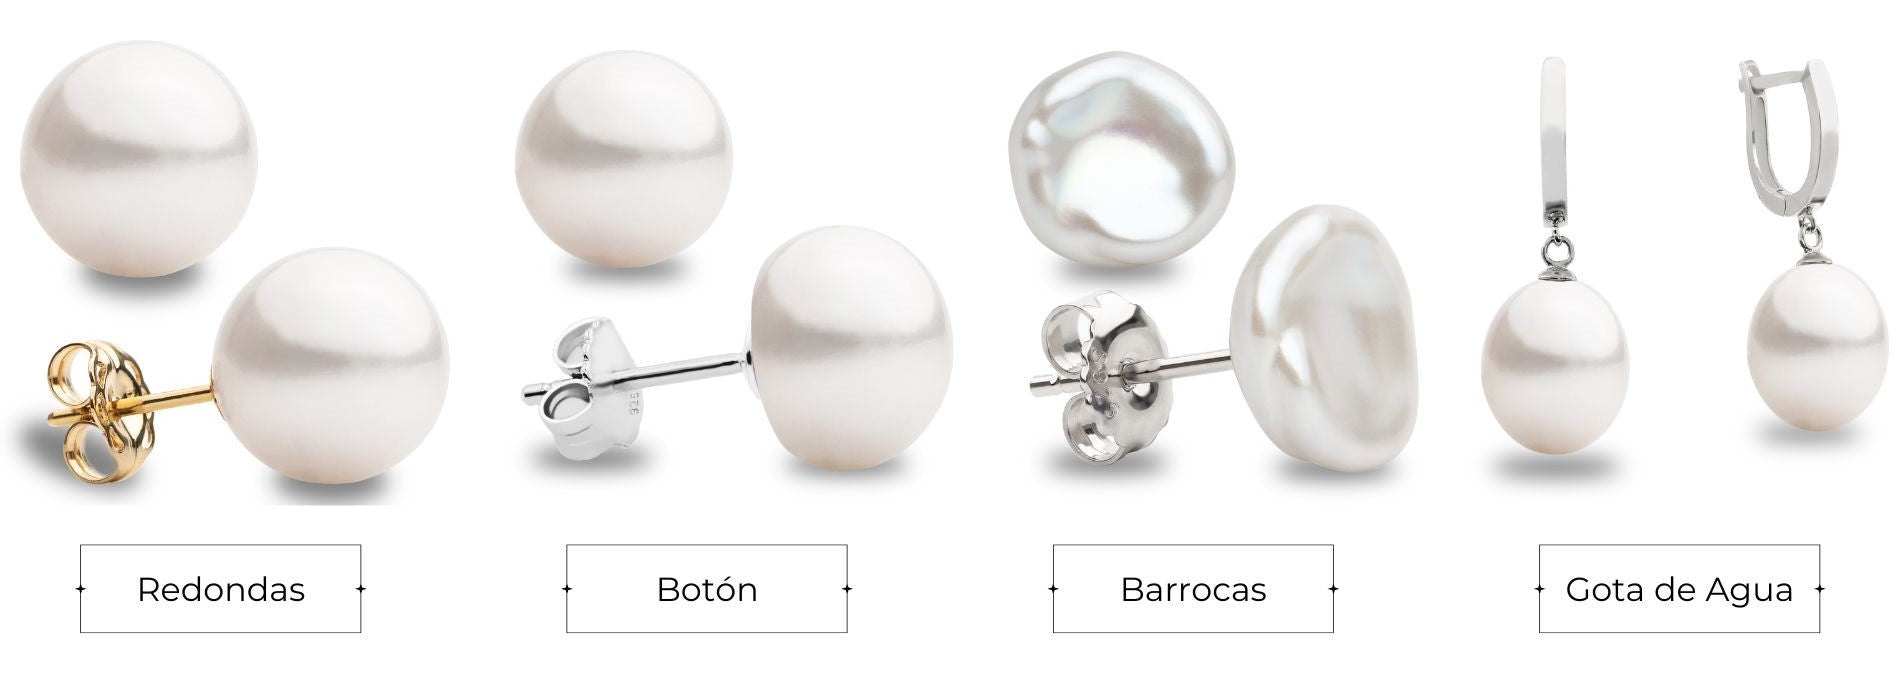 Tipos de perlas según su forma